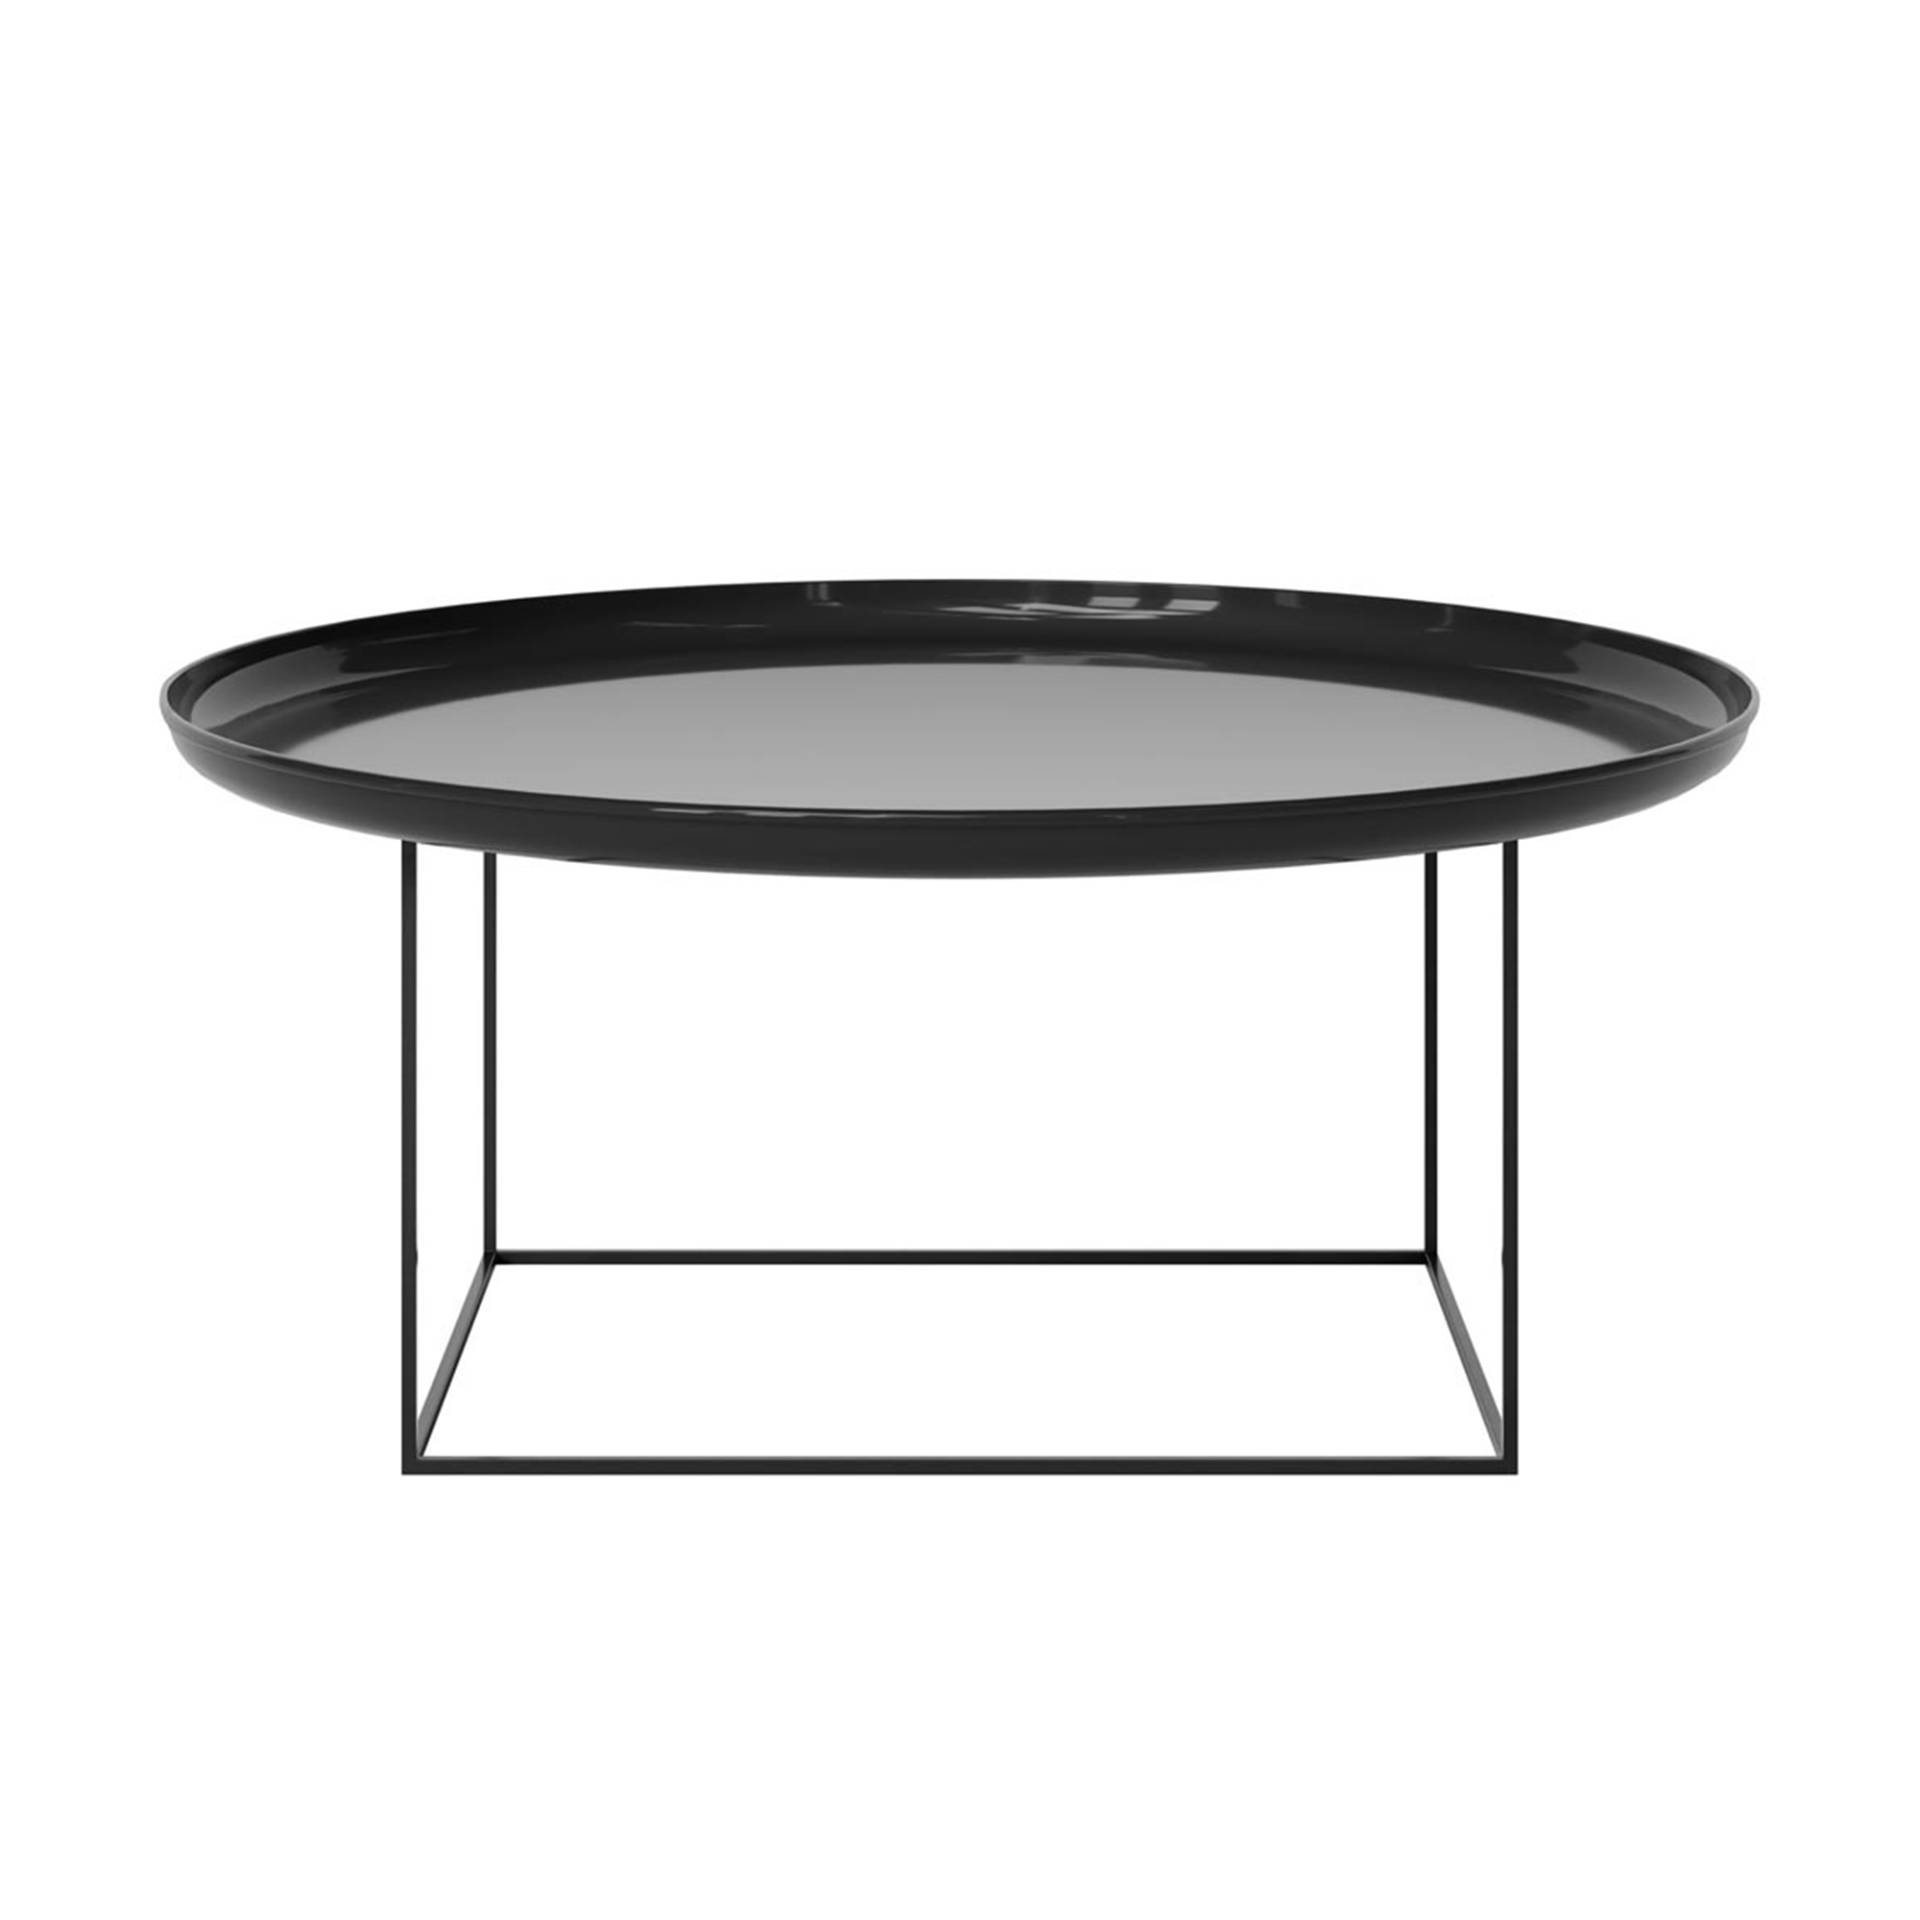 NORR 11 - Duke Large Beistelltisch/Couchtisch Ø 90cm lackiert - obsidian/glänzend/Tischplatte abnehmbar/H: 43cm von NORR 11